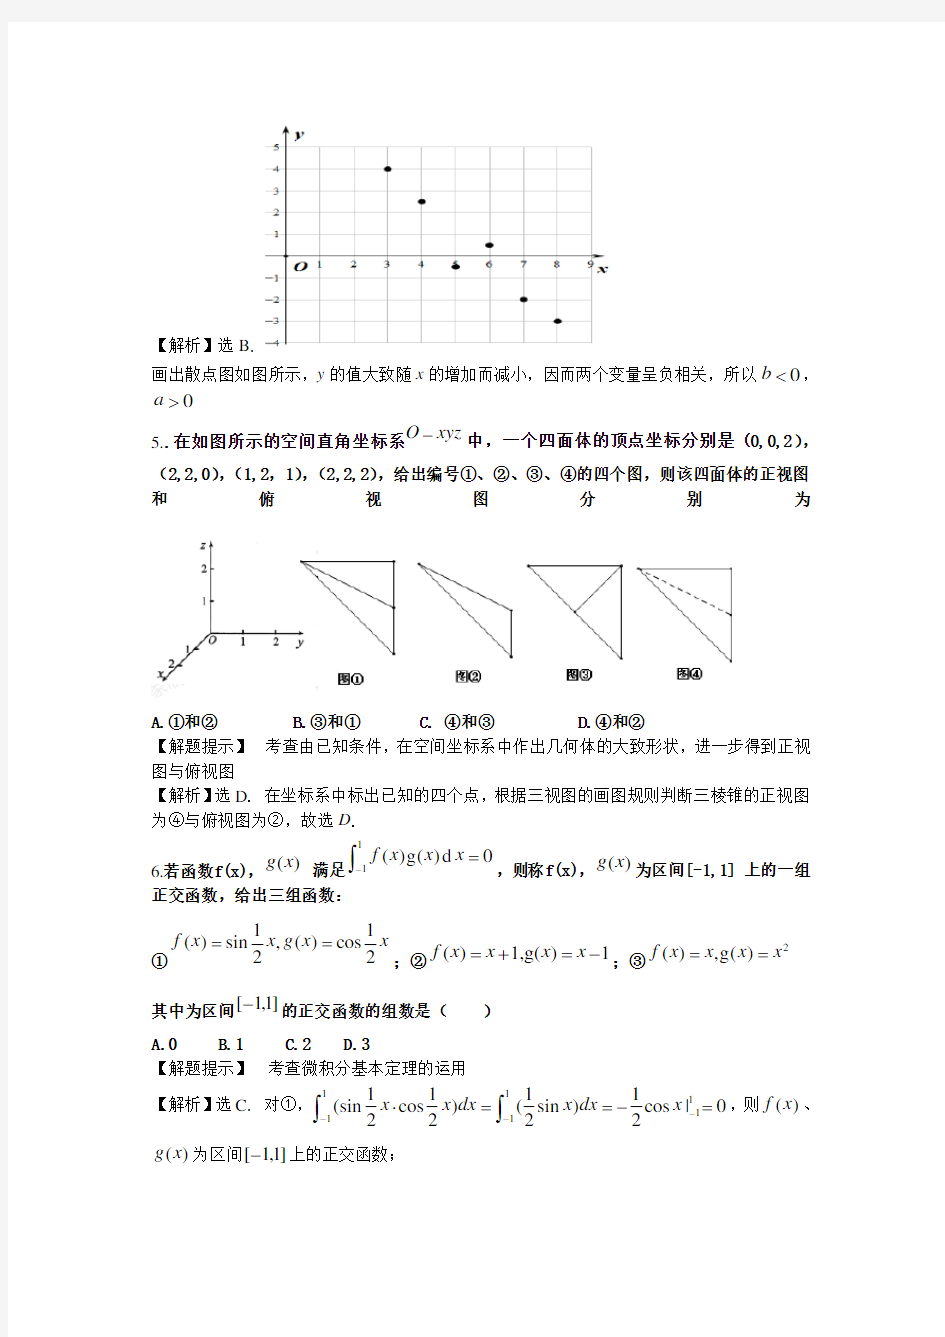 2014年湖北省高考数学理科试题及解析(全部题目)